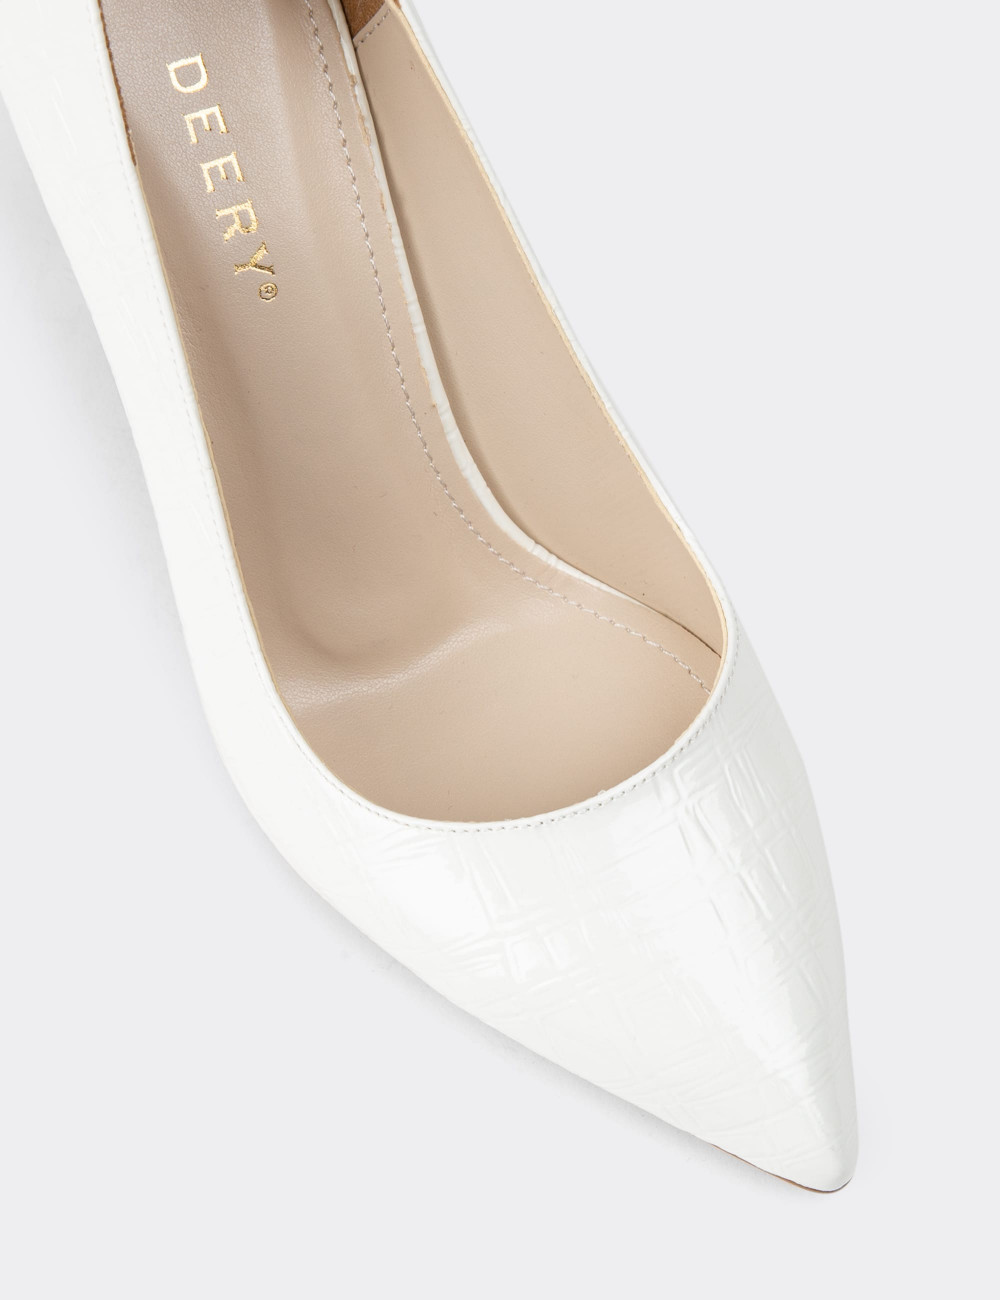 Rugan Beyaz Stiletto Kadın Topuklu Ayakkabı - 0K101ZBYZM01